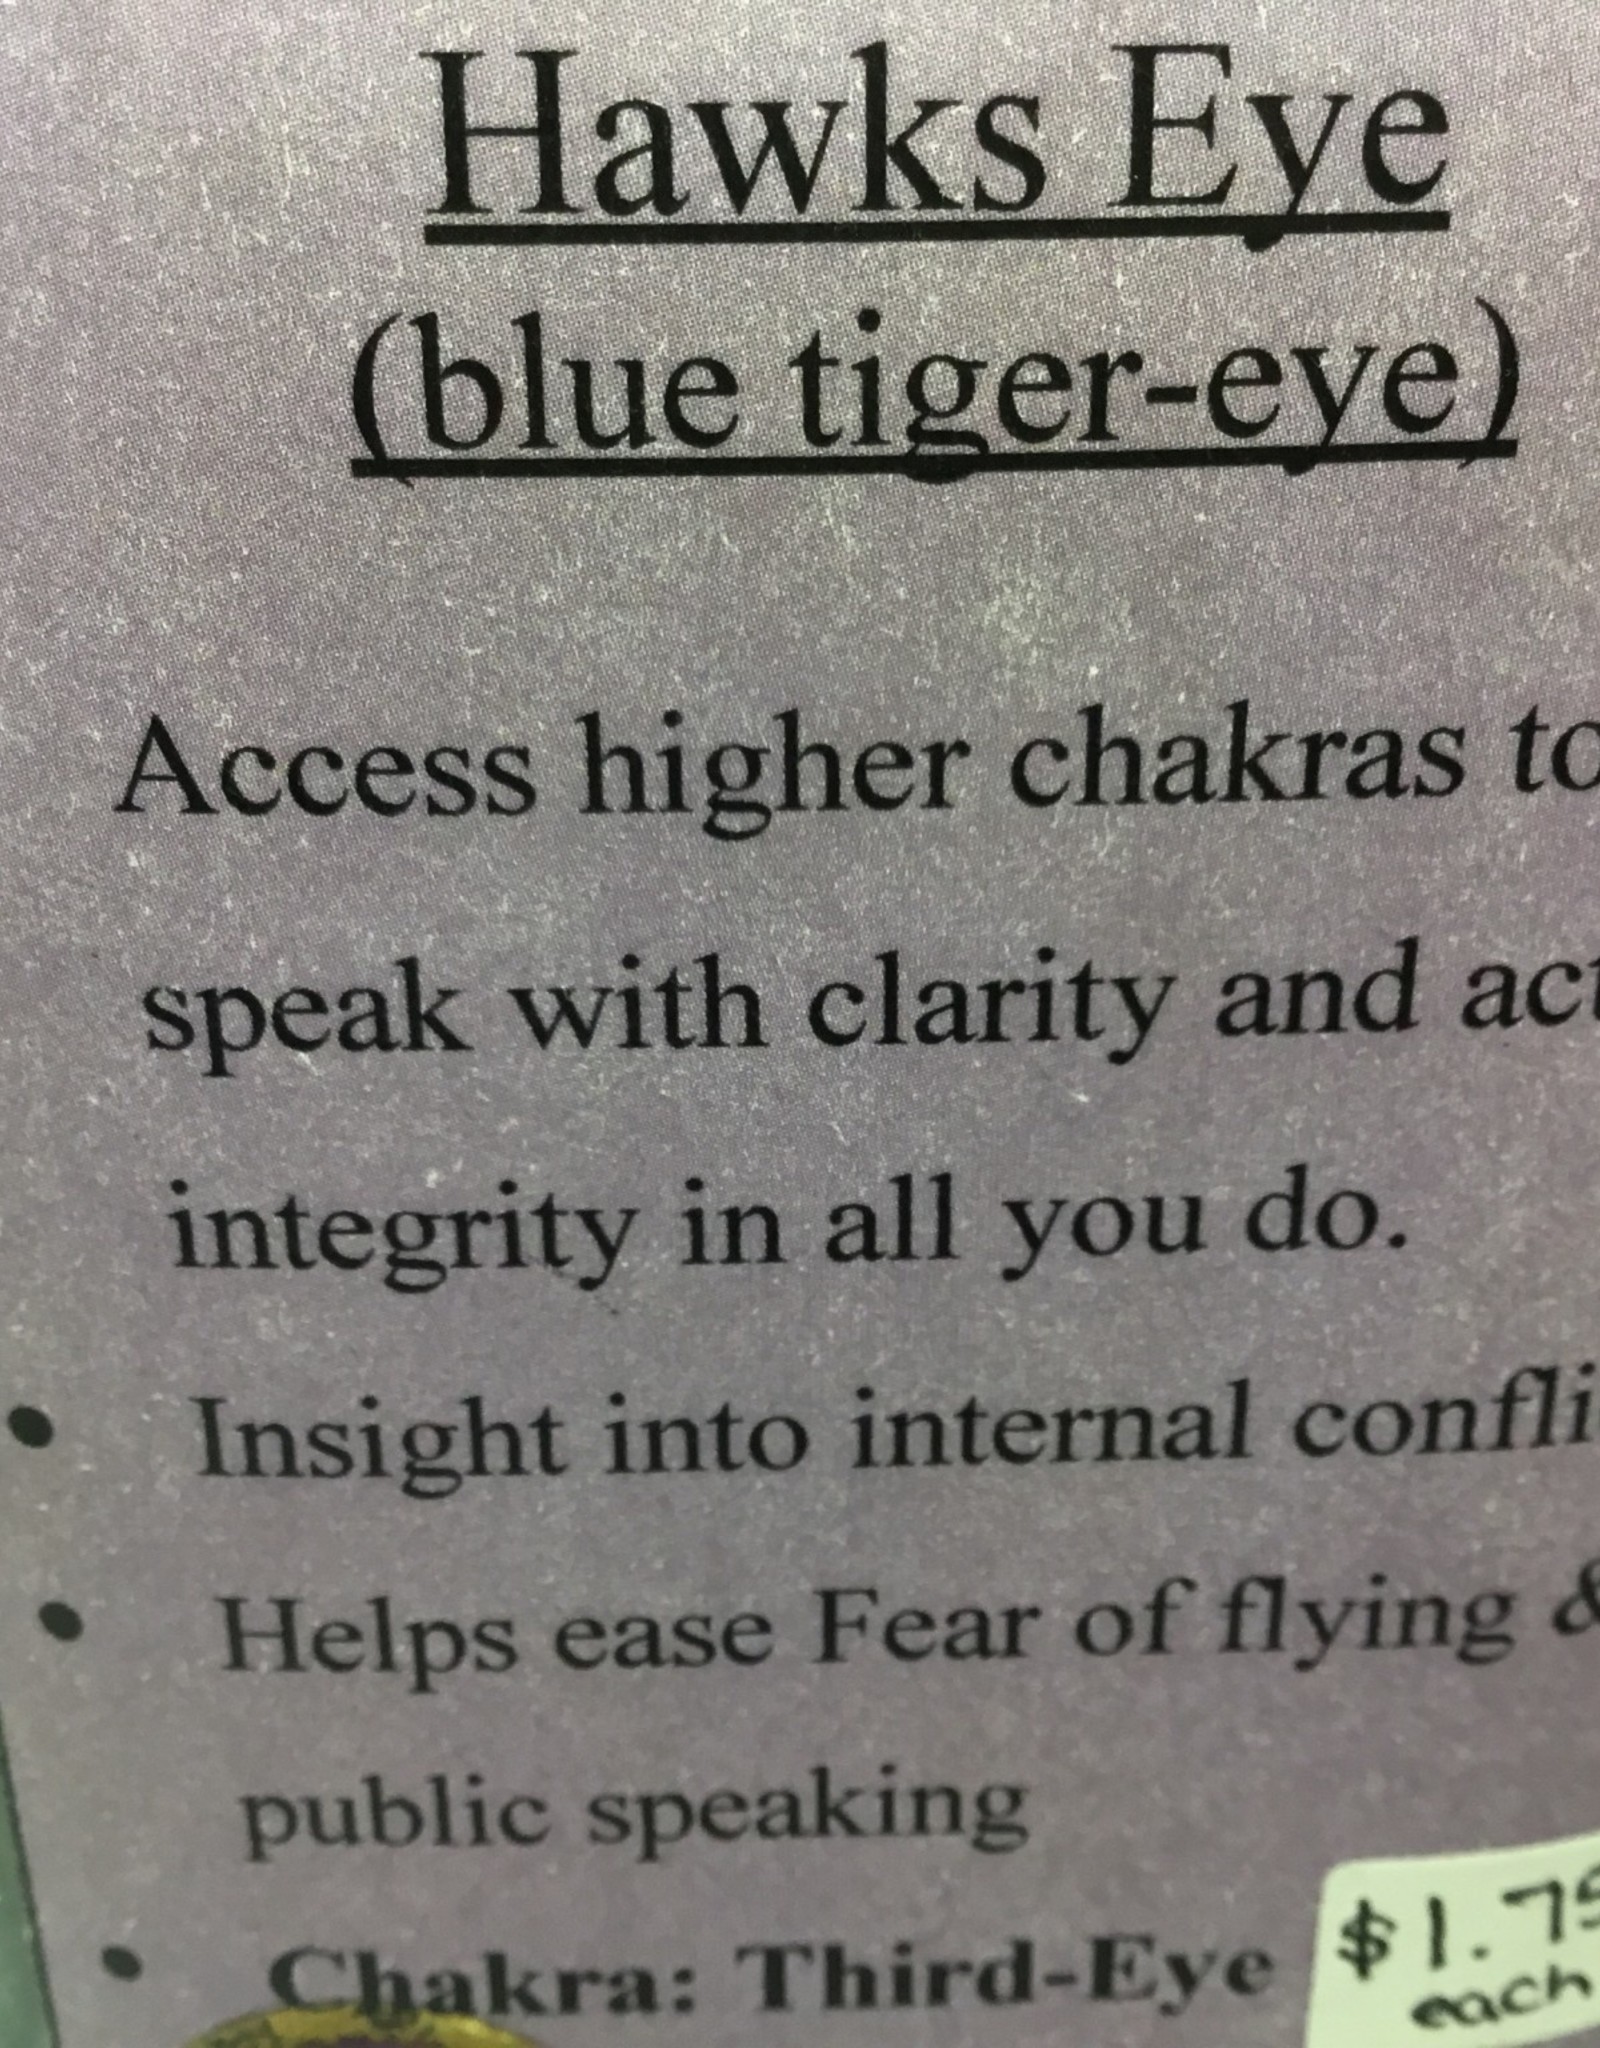 Blue Tiger Eye (also called Hawks Eye)